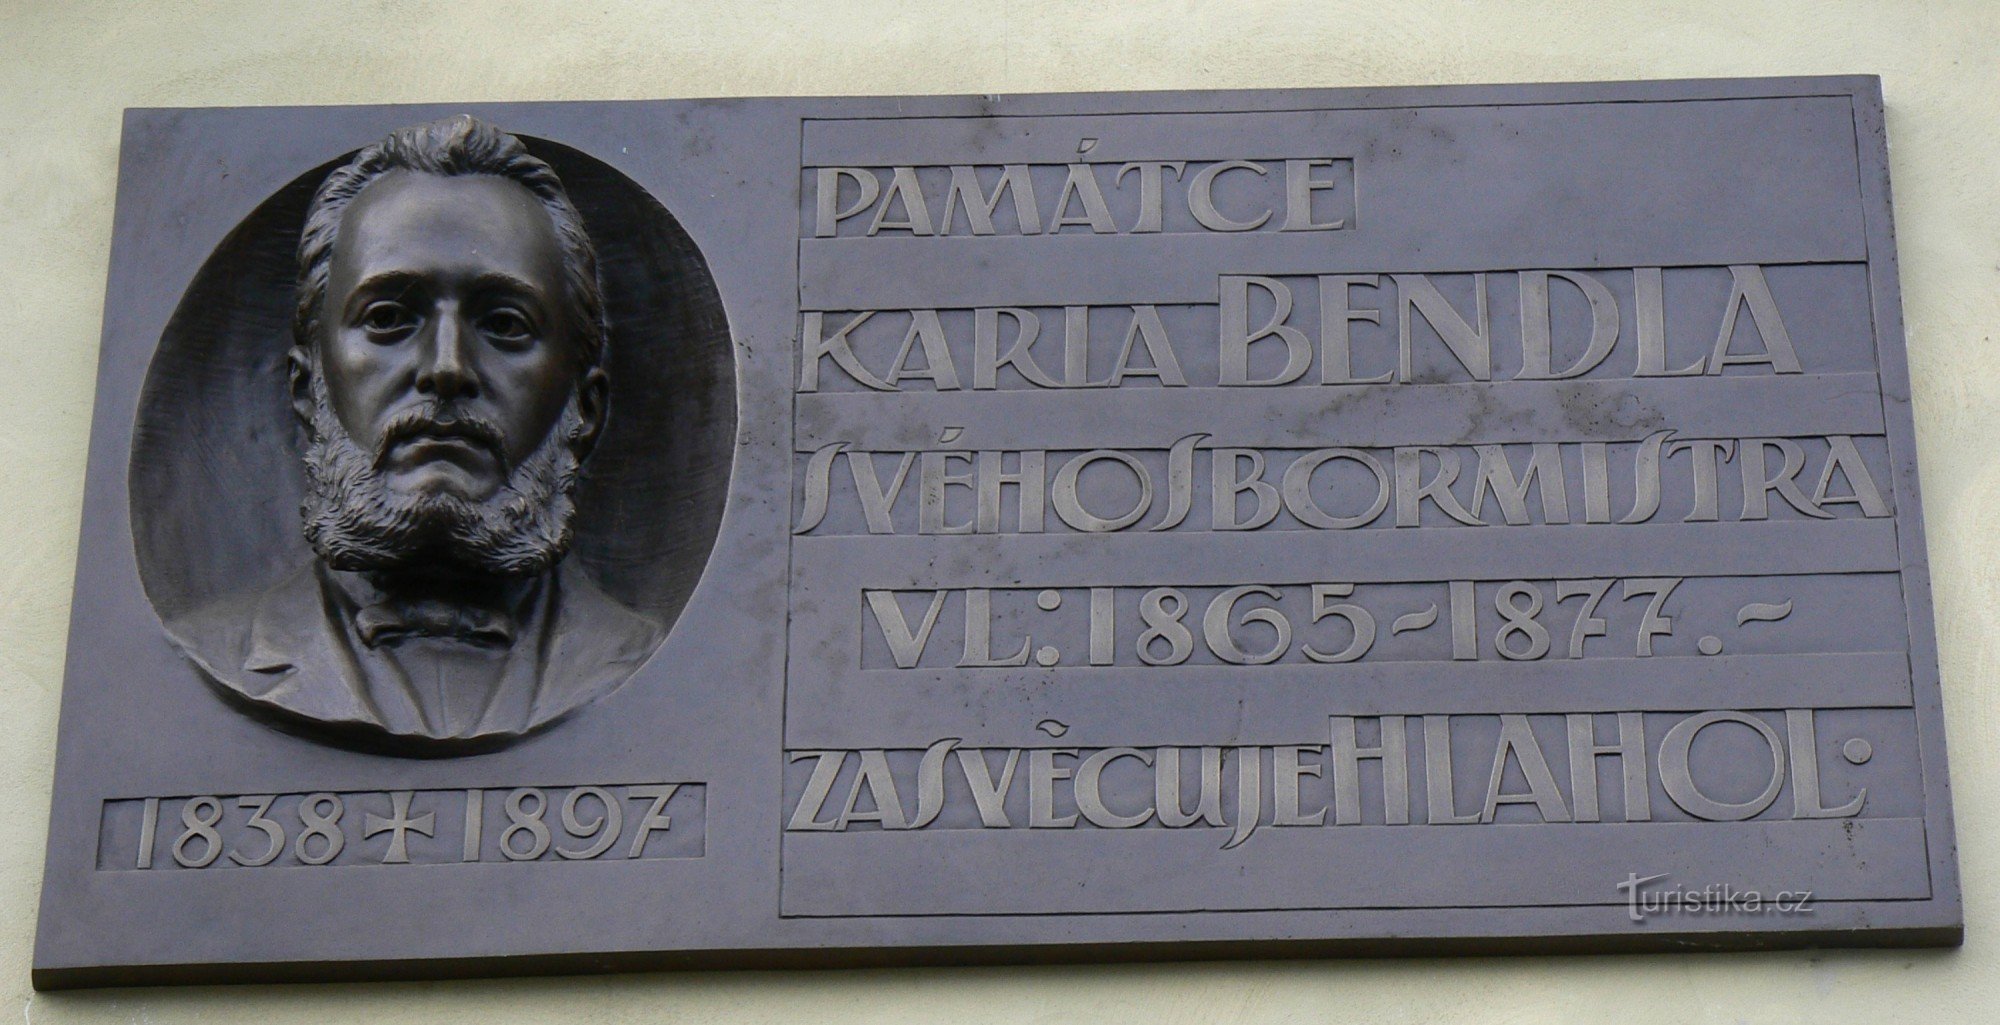 Placă memorială Karel Bendl